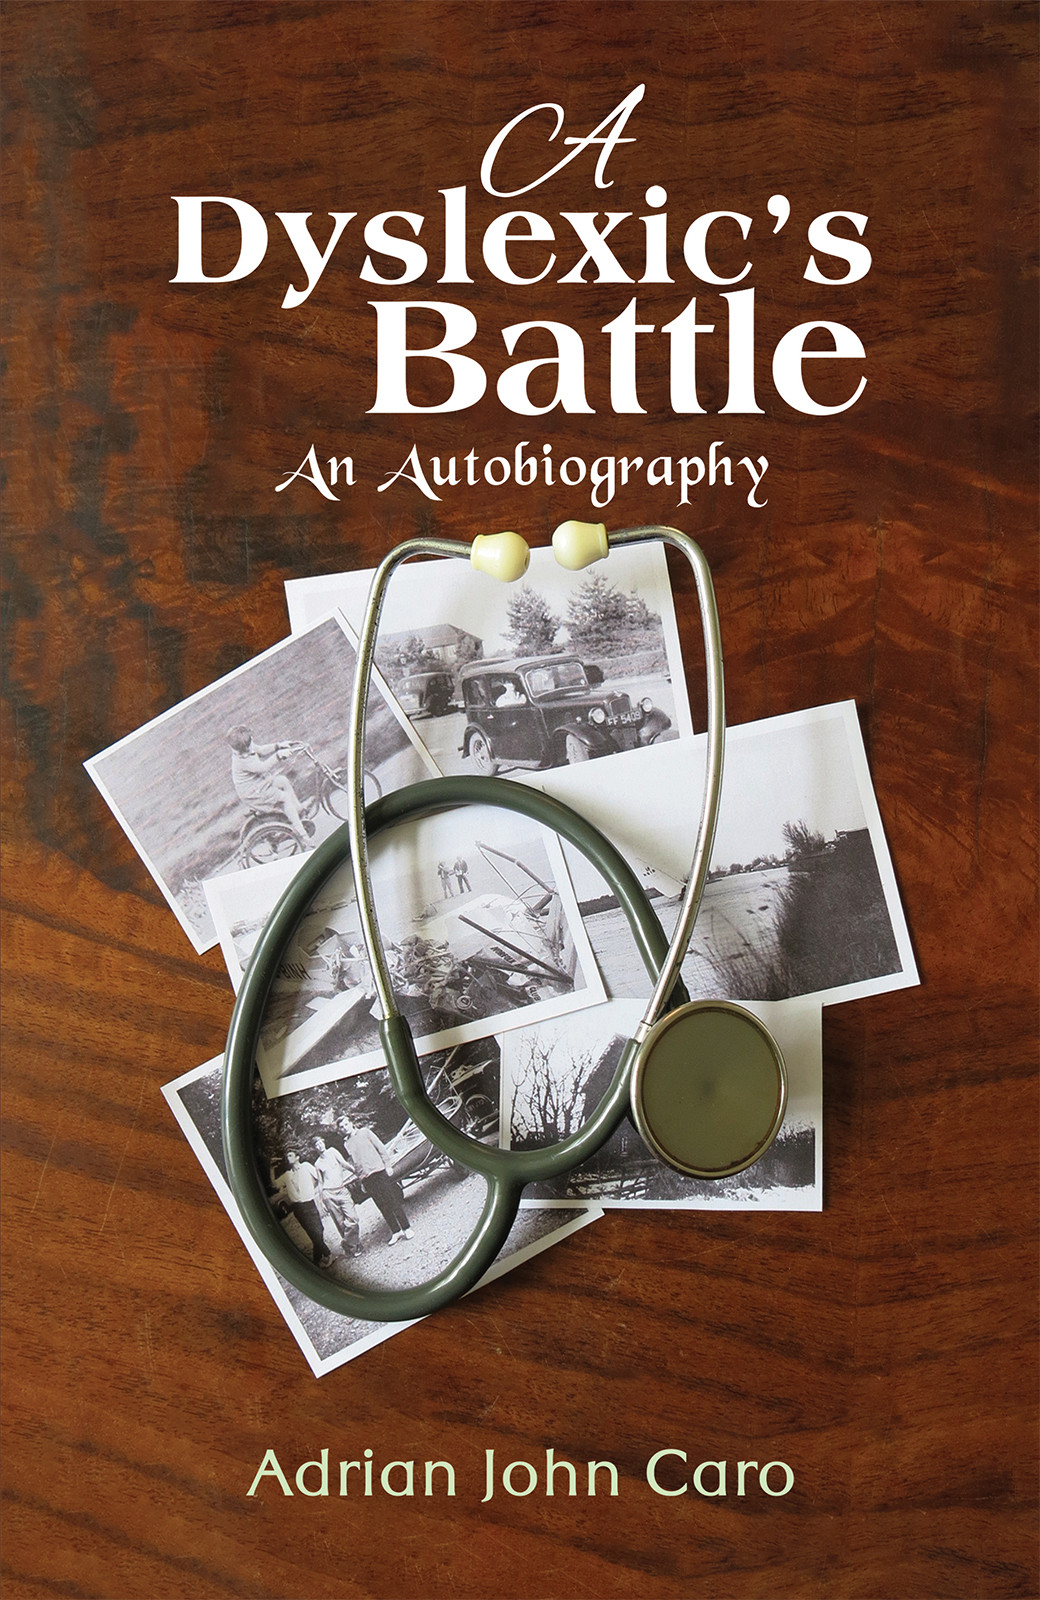 A Dyslexic’s Battle-bookcover